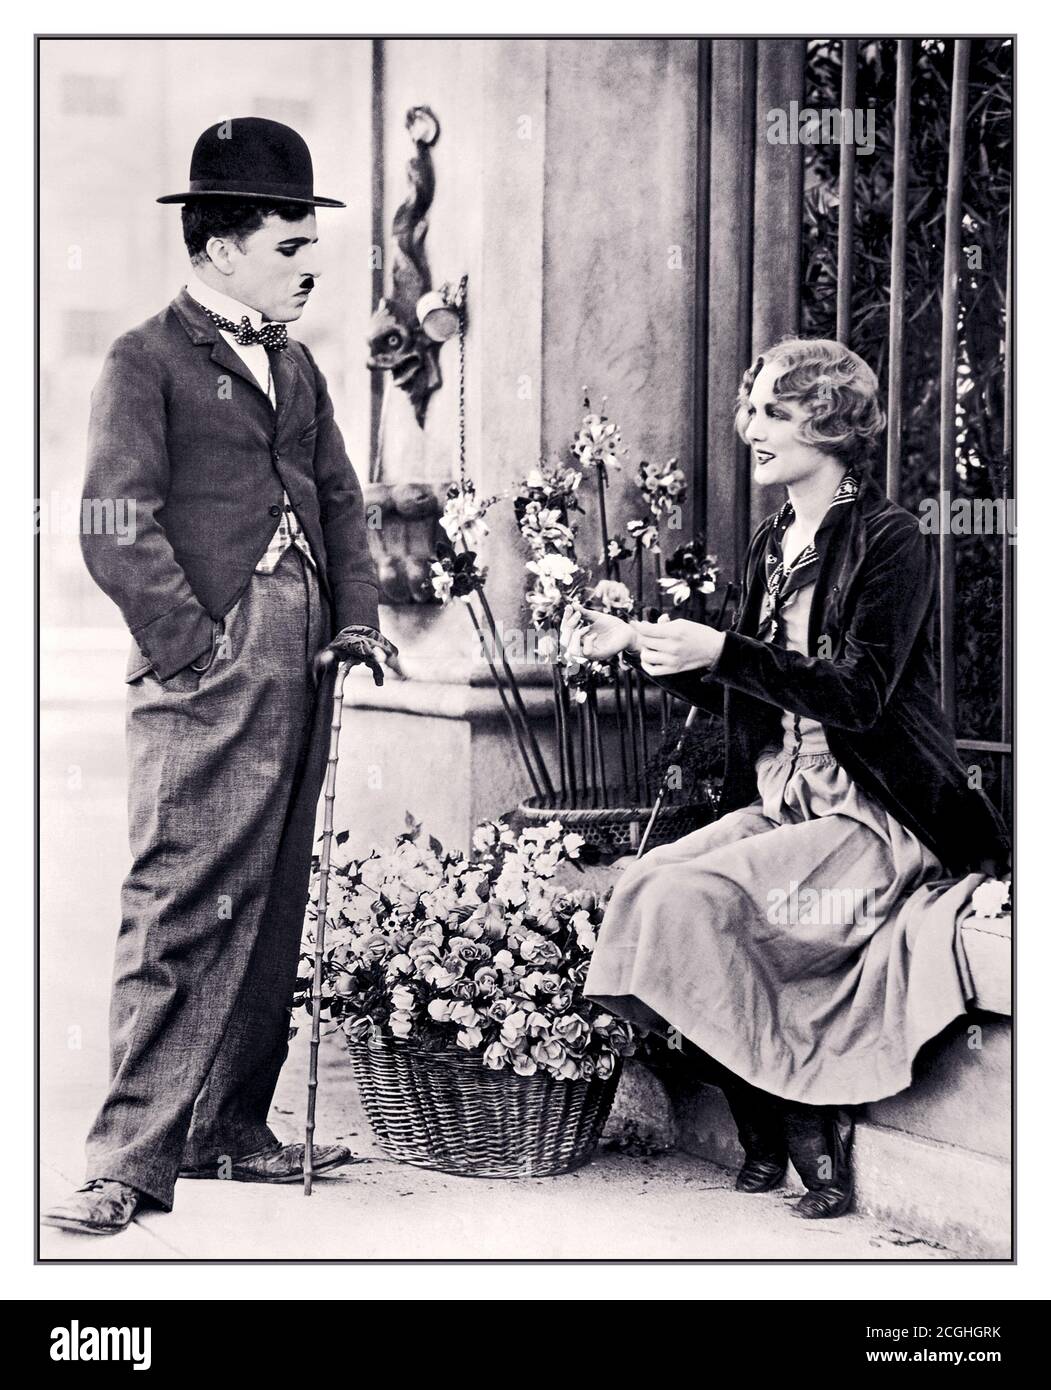 Archiv Charlie Chaplin Werbefoto für Charlie Chaplins 1931 Film City Lights, der Chaplin als Tramp und seine Co-Star Virginia Cherrill als Blind Flower Girl zeigt. Die Still stammt aus der ersten Szene mit dem blinden Blumenmädchen, das zwischen dem 27. Dezember 1928 und dem 1929. April zum ersten Mal gedreht wurde und dann Ende 1929 erneut gedreht wurde. Dieses Bild stammt höchstwahrscheinlich aus den späteren Neuaufnahmen. Dieses Werbeexemplar wurde am 2. Januar 1931 erstellt, und der Film selbst wurde am 30. Januar 1931 veröffentlicht. Stockfoto